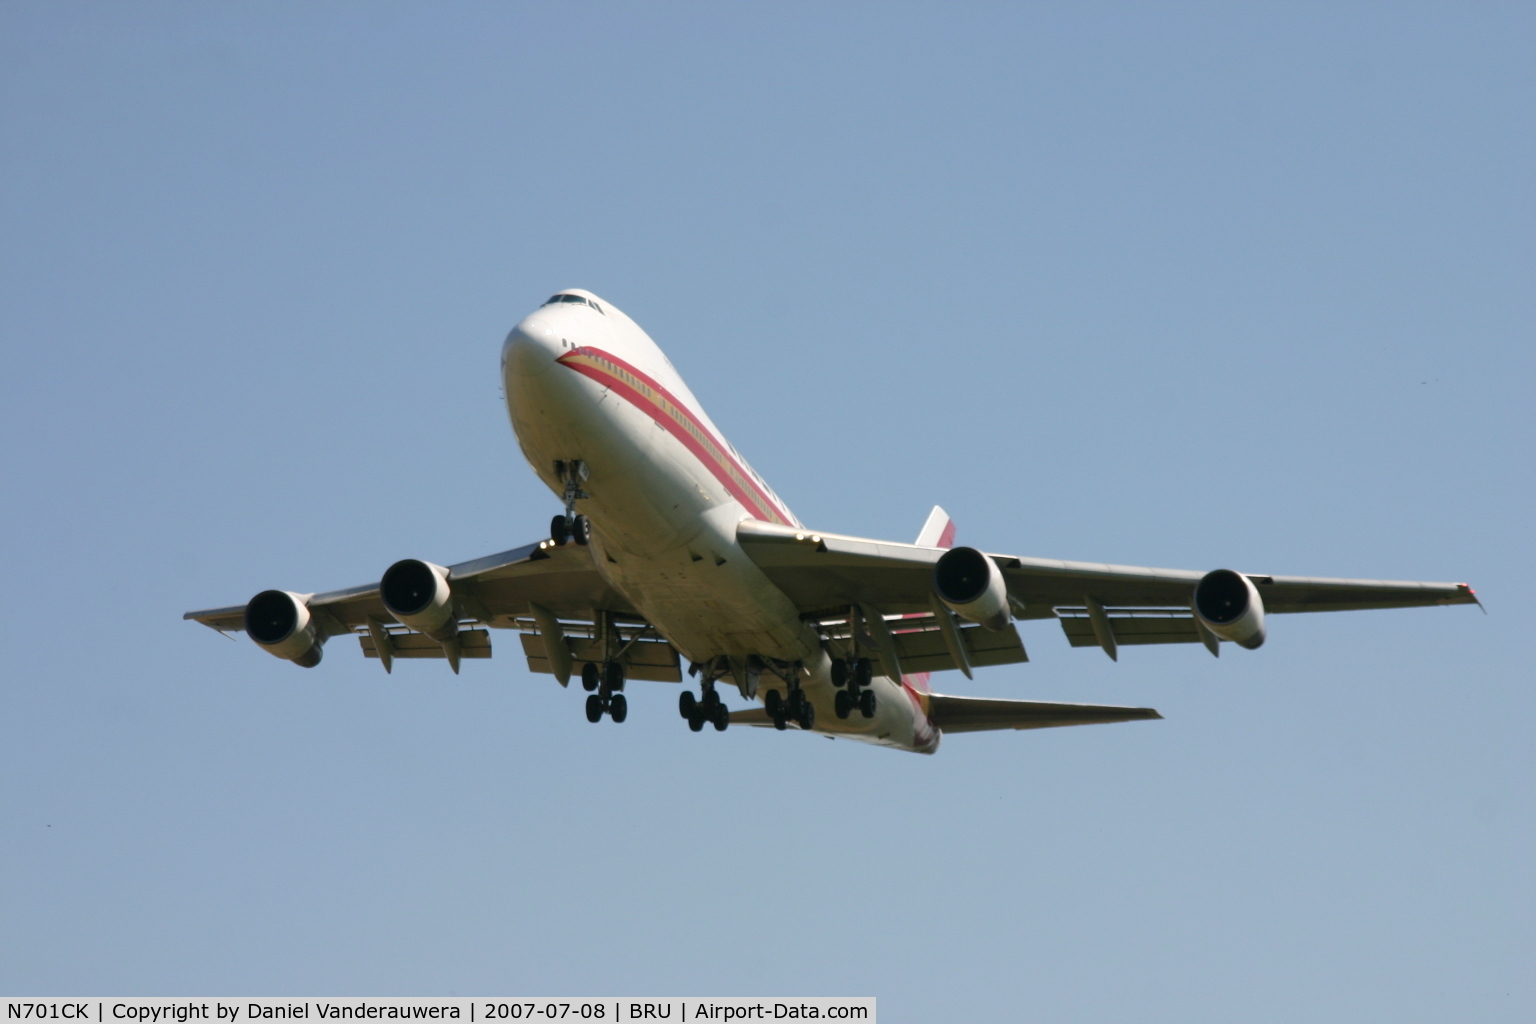 N701CK, 1979 Boeing 747-259B C/N 21730, arrival of flight K4 207 to rwy 25R